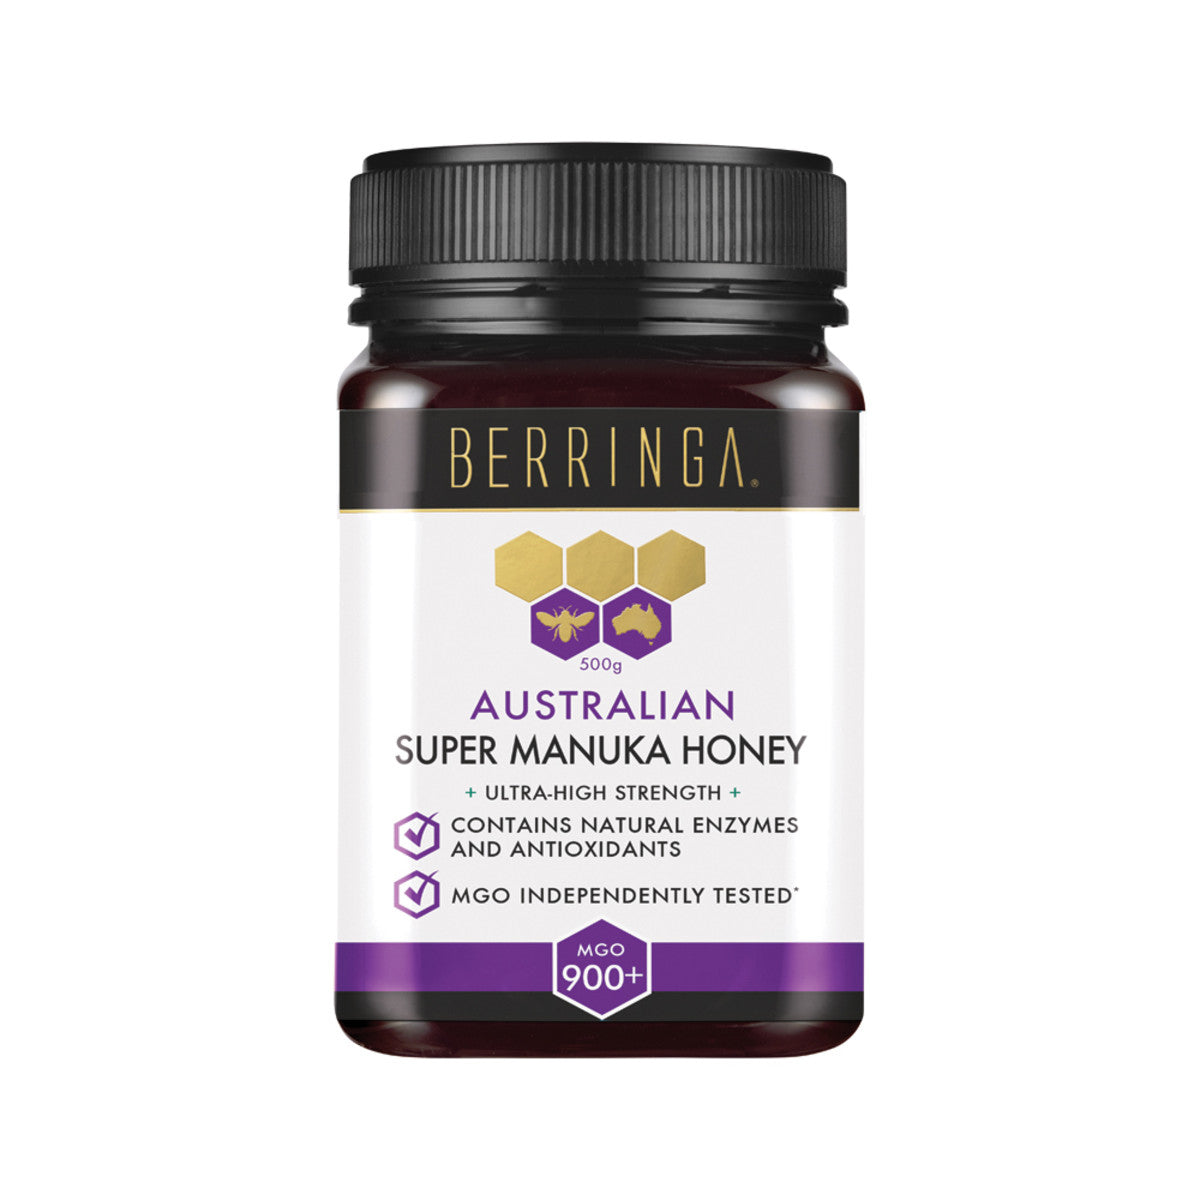 Berringa Australian Manuka Honey MGO 900+, 250g Or 500g Ultra-High Strength